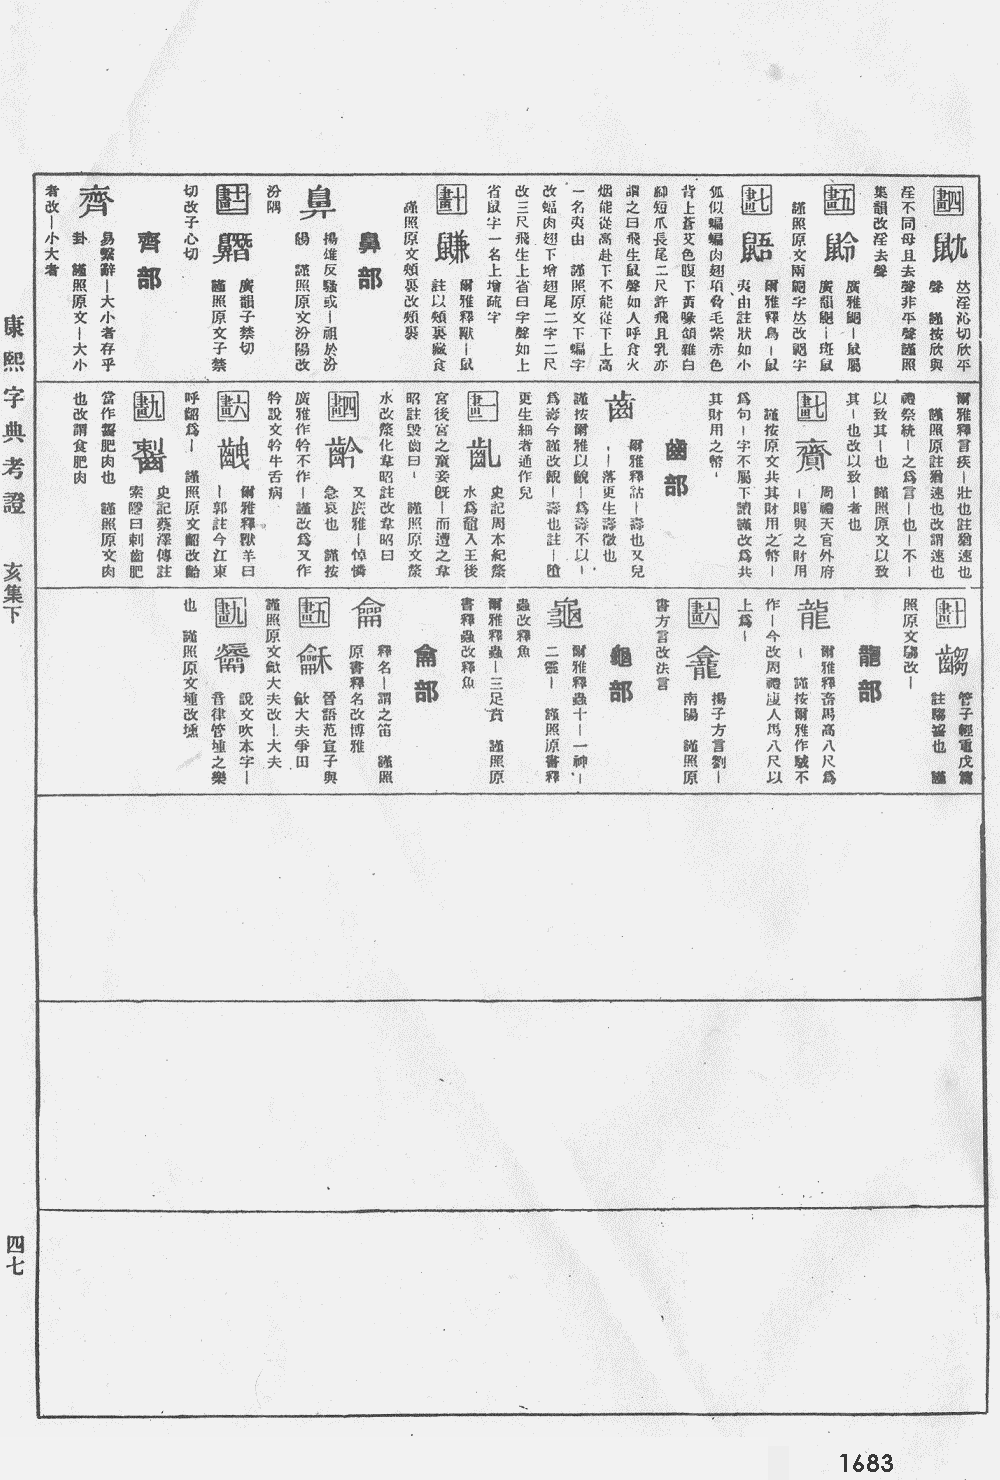 康熙字典掃描版第1683頁